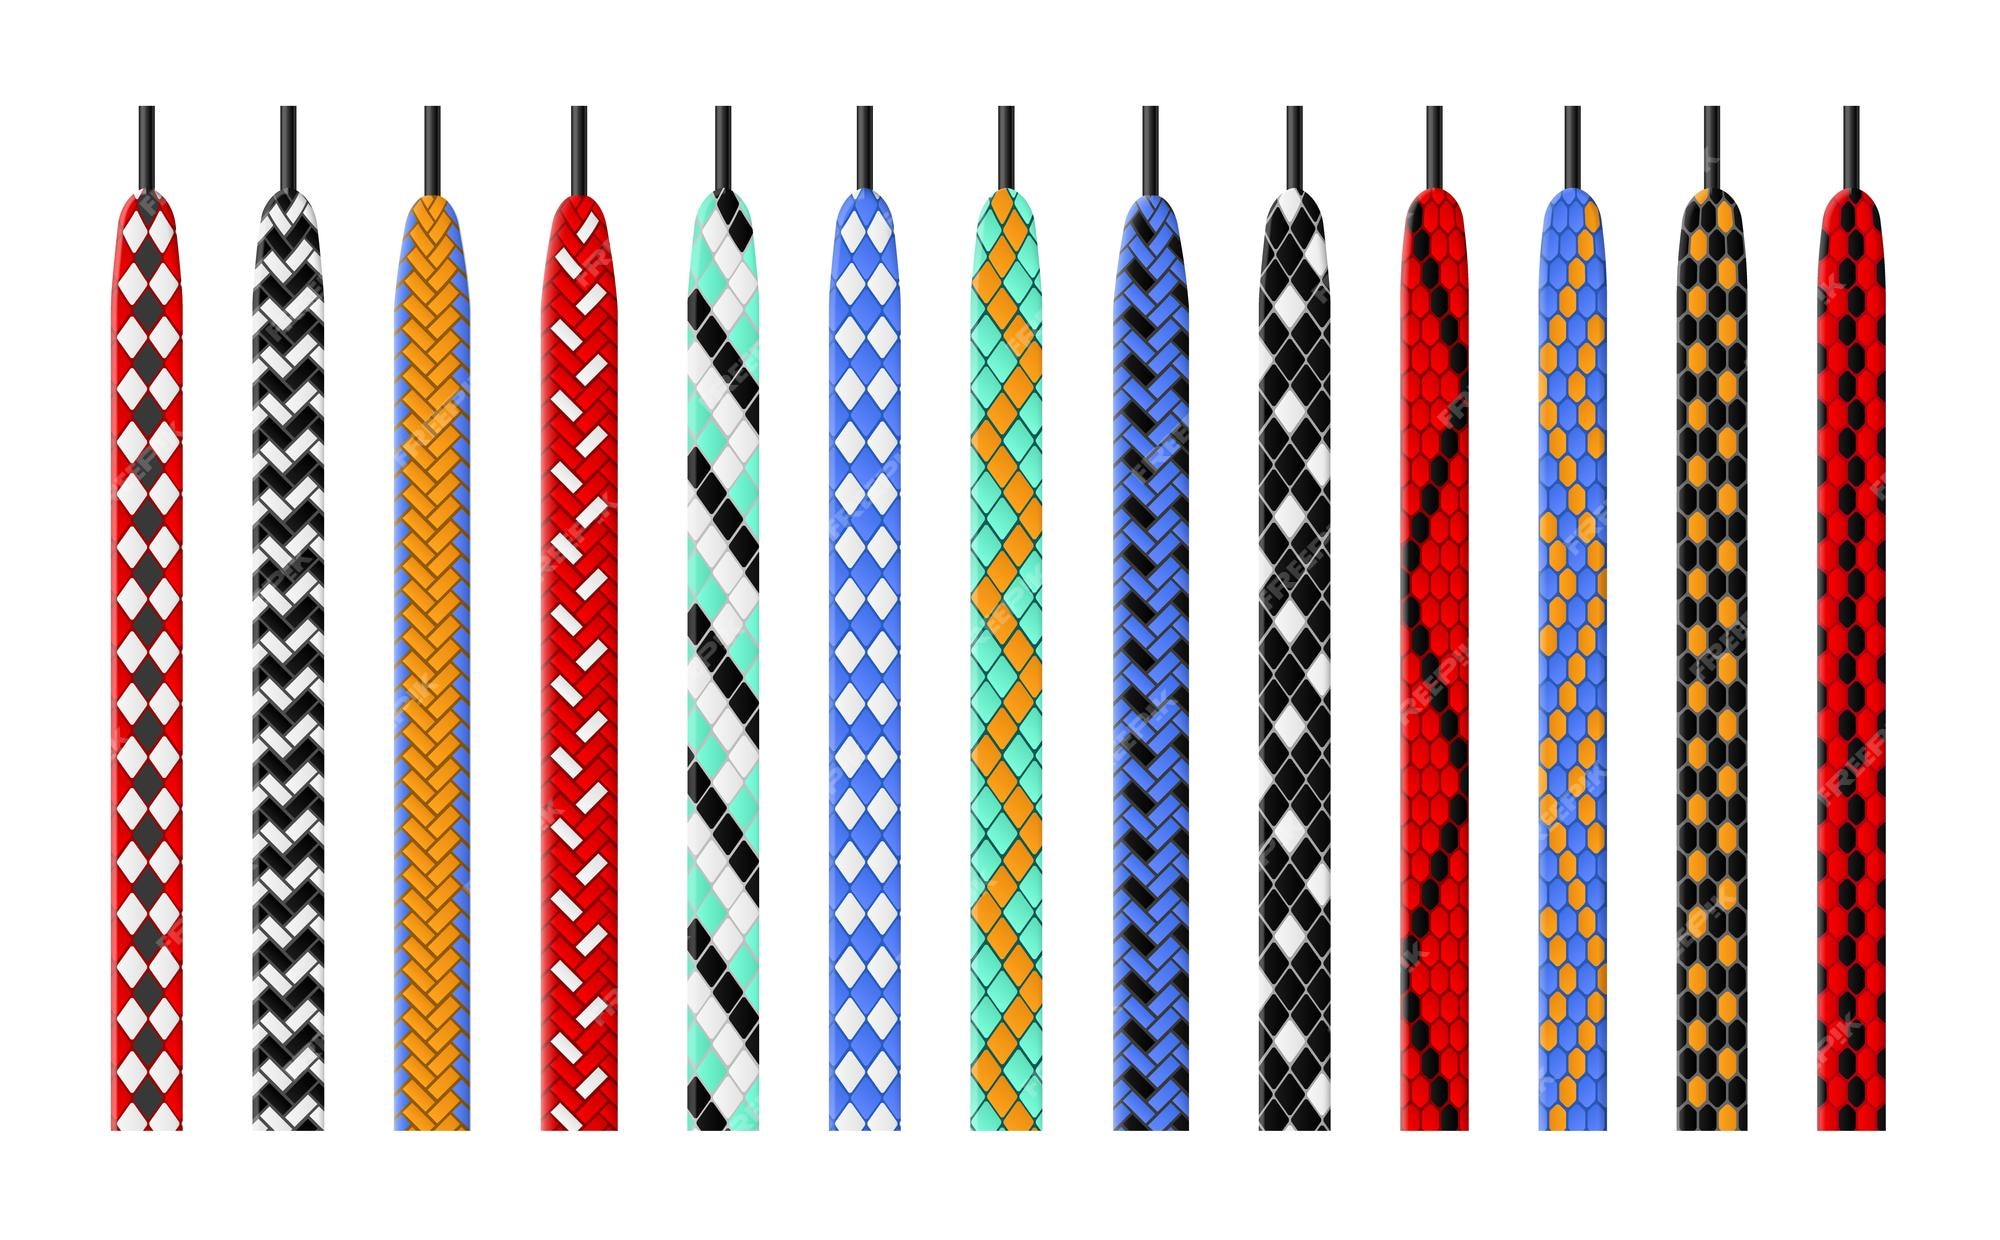 Cordones estampados opciones de color combinadas atan cuerdas de zapatos patrones coloridos variados cordones calzado elementos de unión textil accesorios para niños para botas conjunto de vectores | Vector Premium